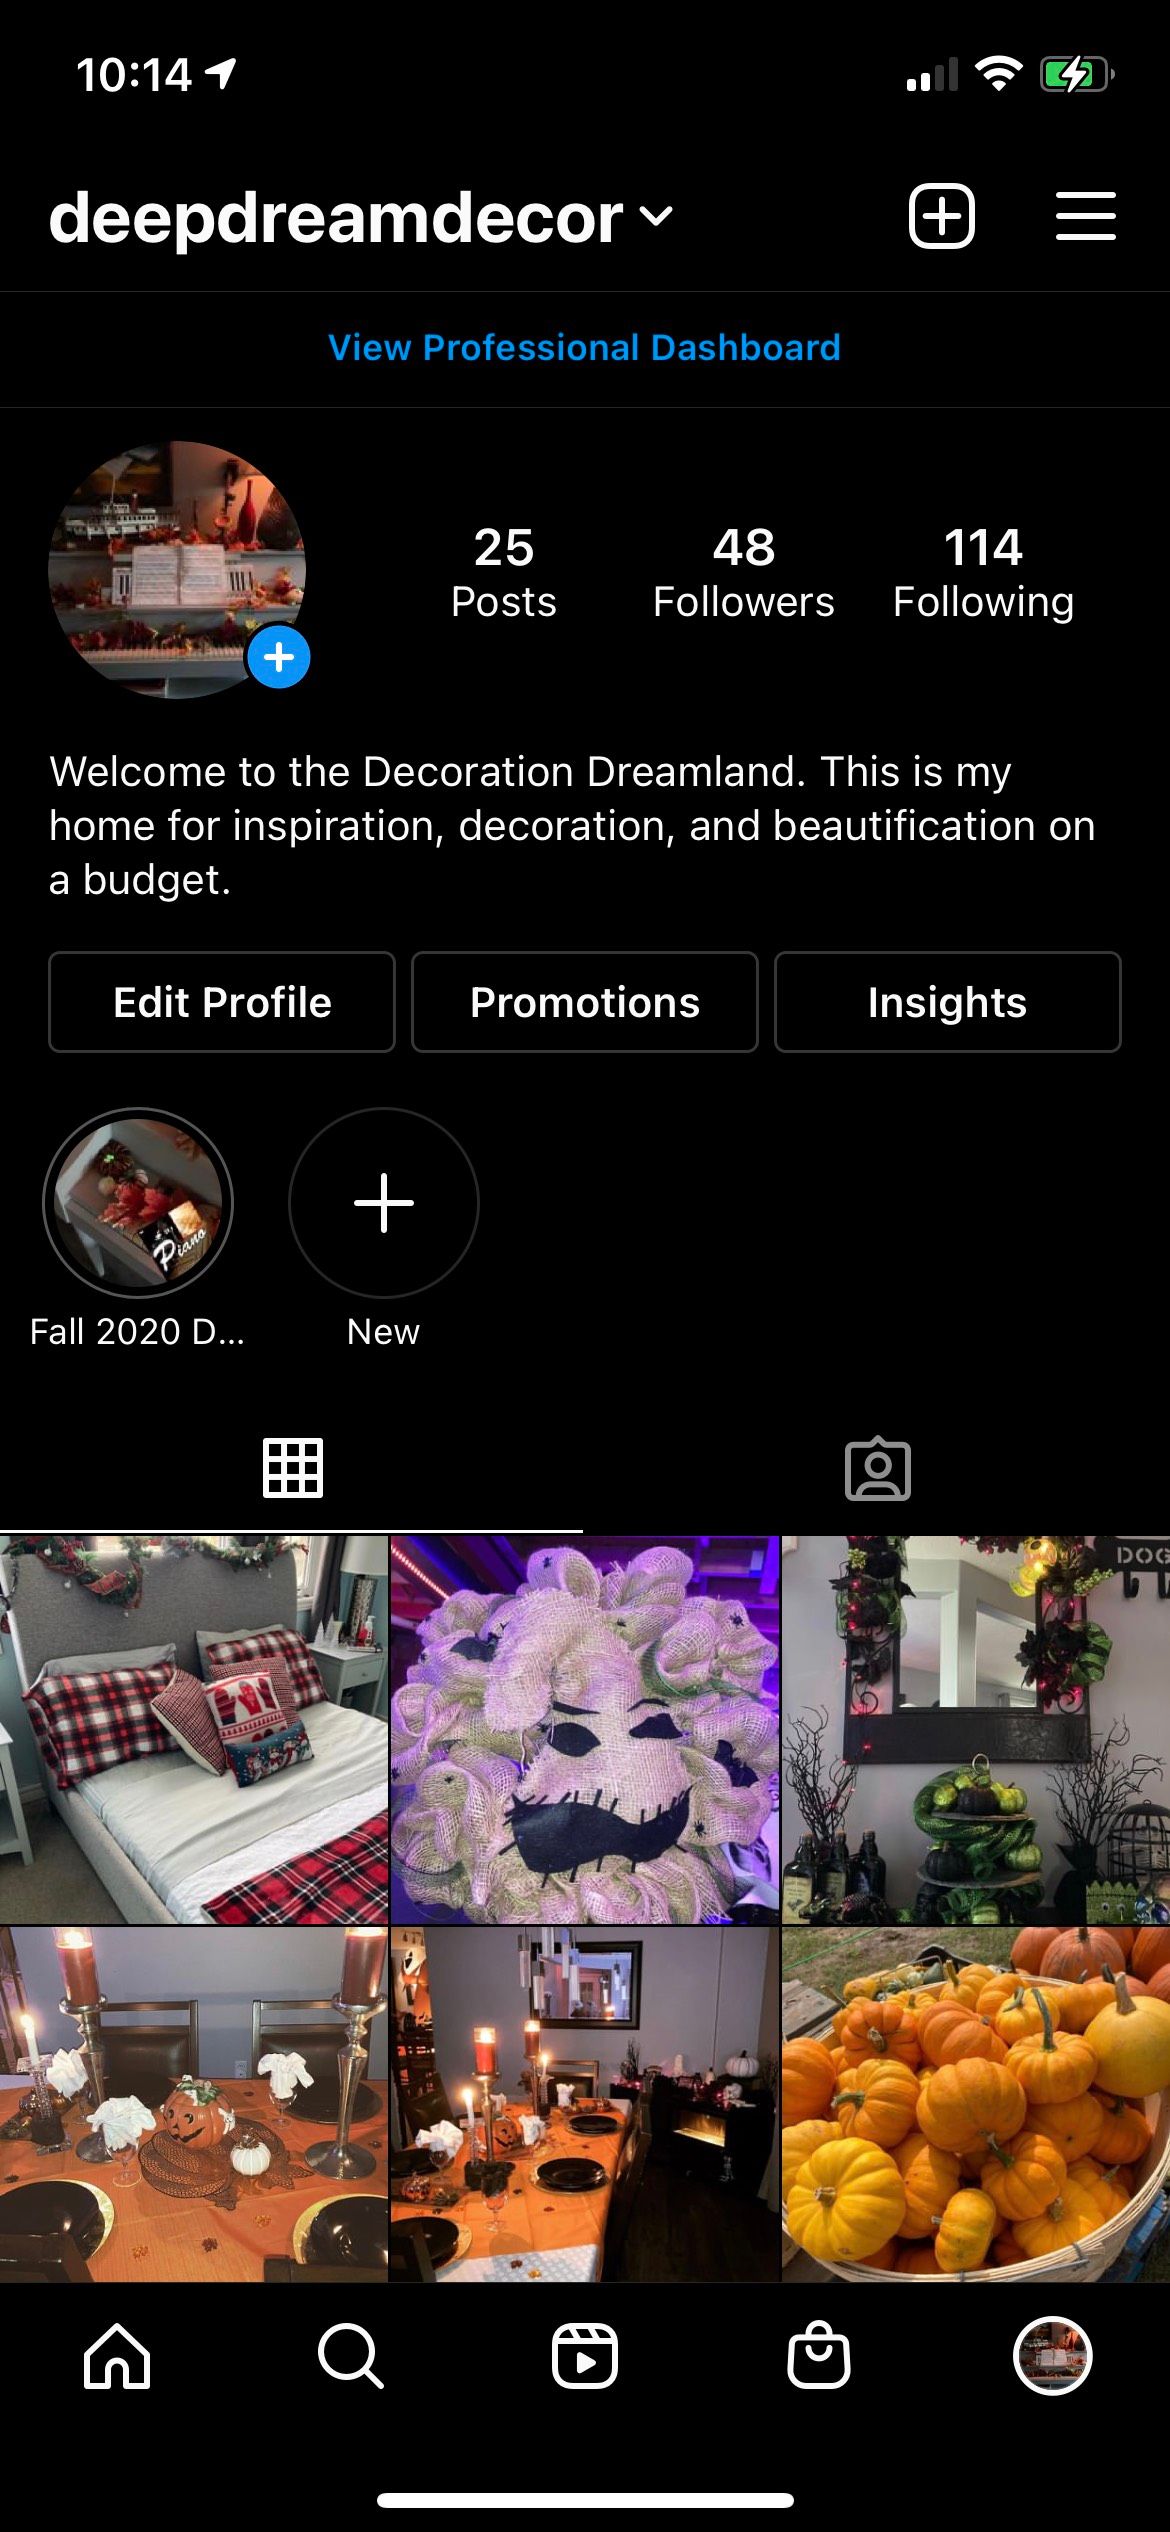 Deep Dream Decor Home Instagram Screenshot